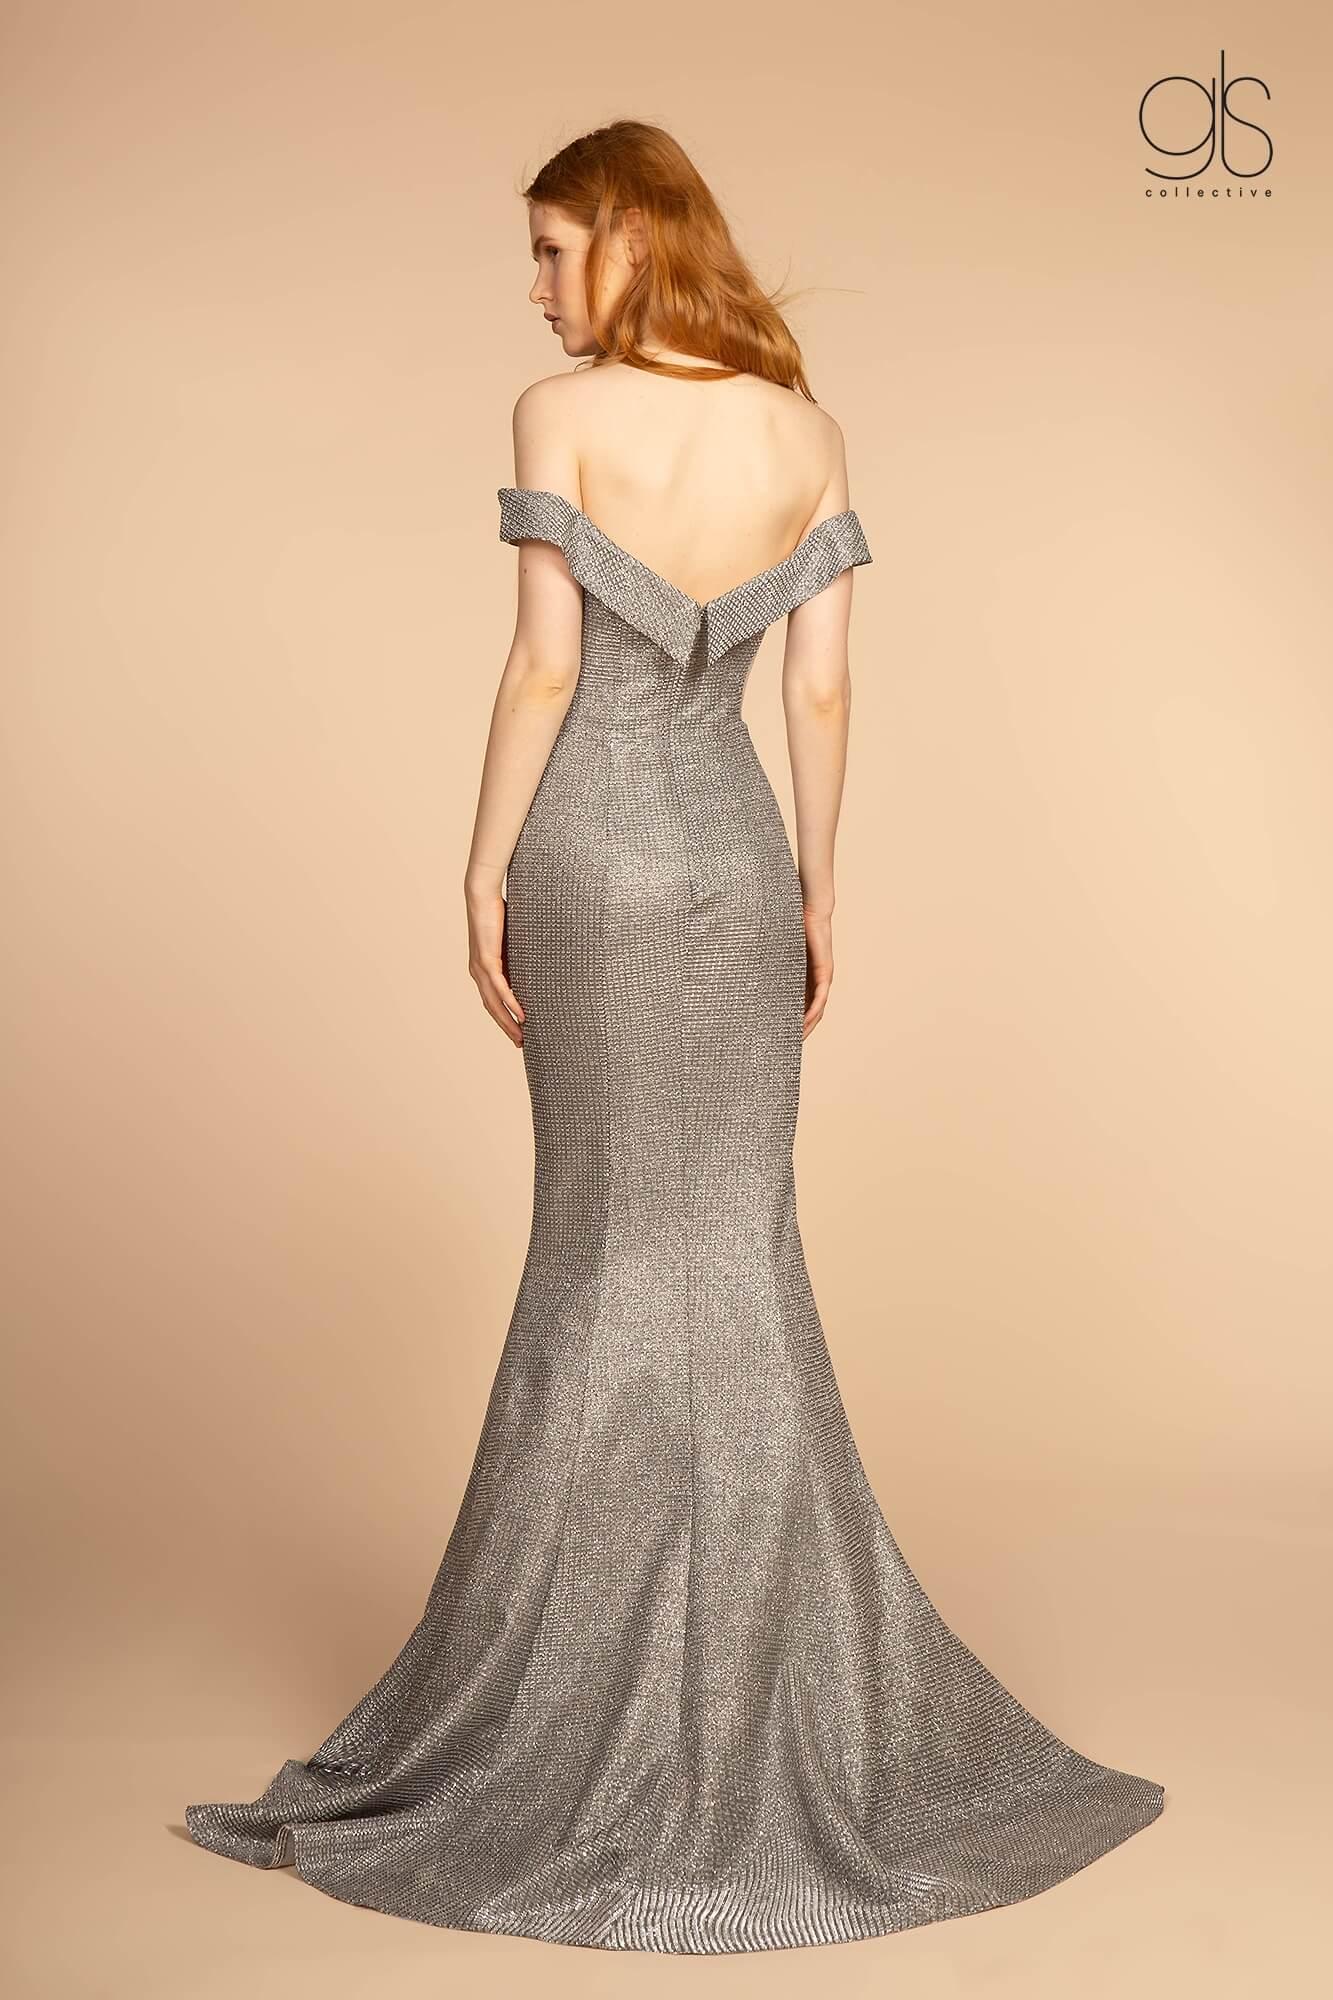 Long Formal Off Shoulder Prom Dress - The Dress Outlet Elizabeth K